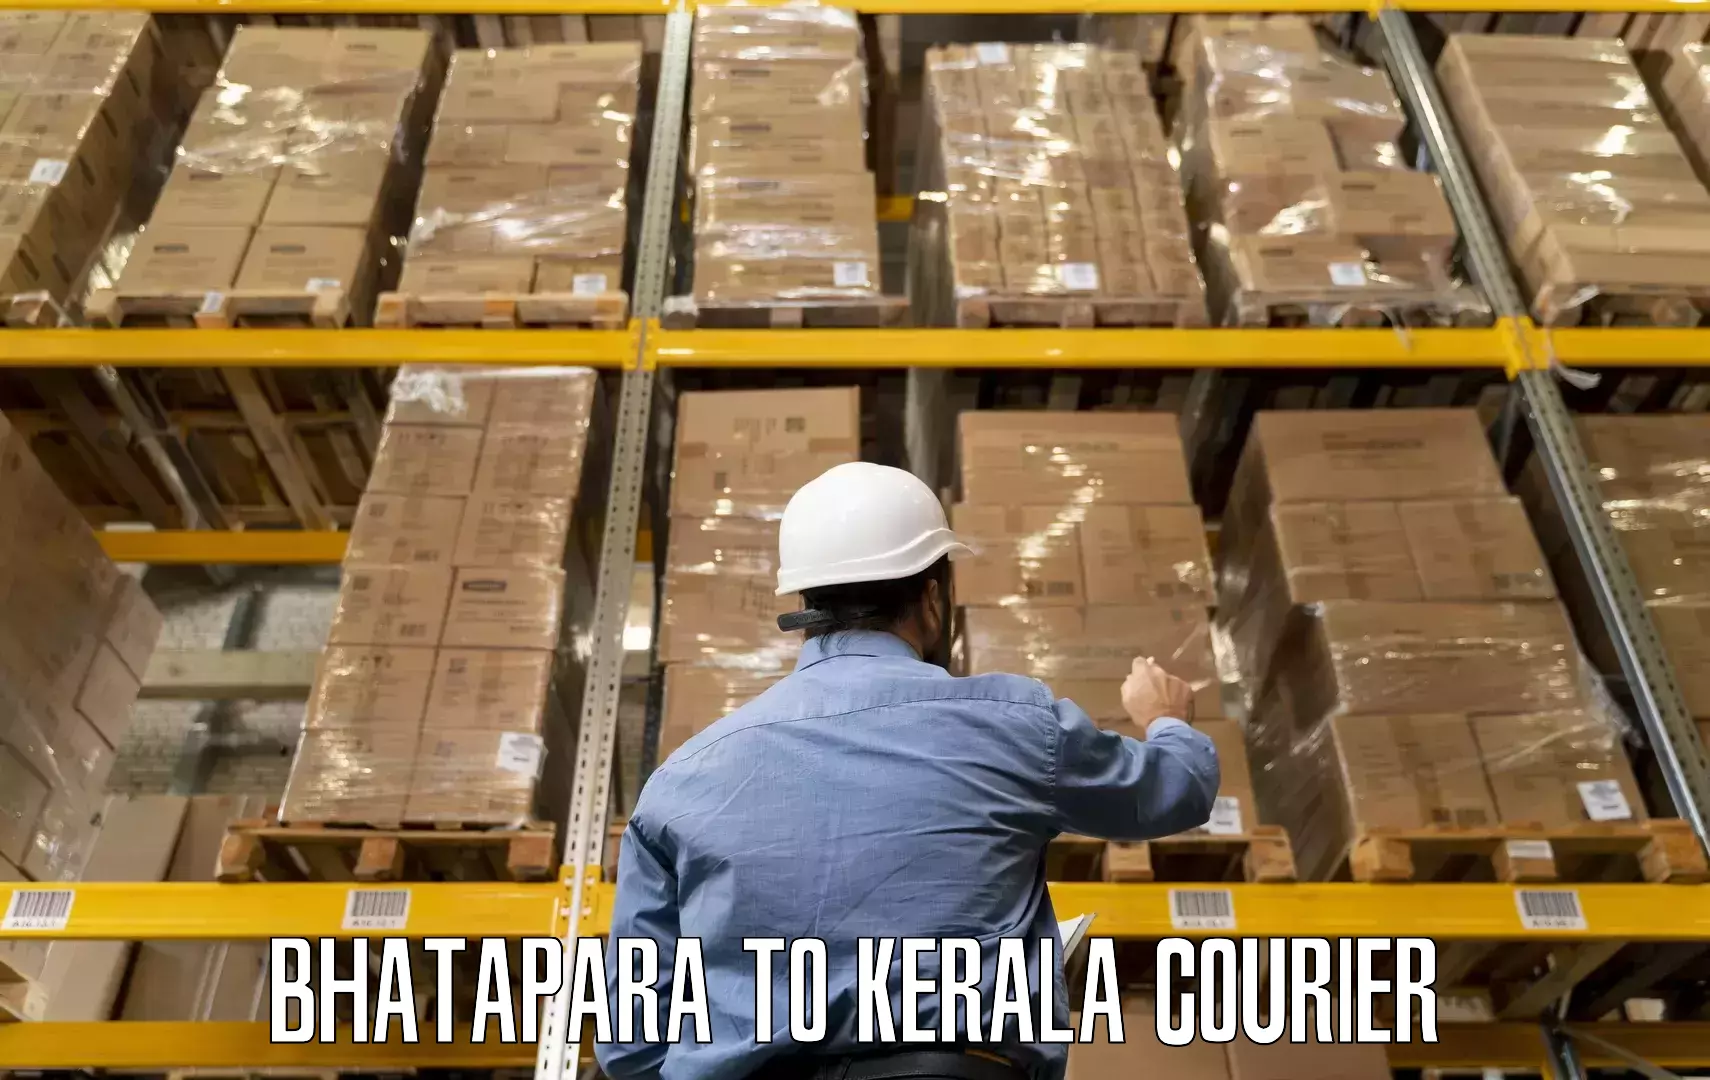 Furniture relocation experts Bhatapara to Puthukkad